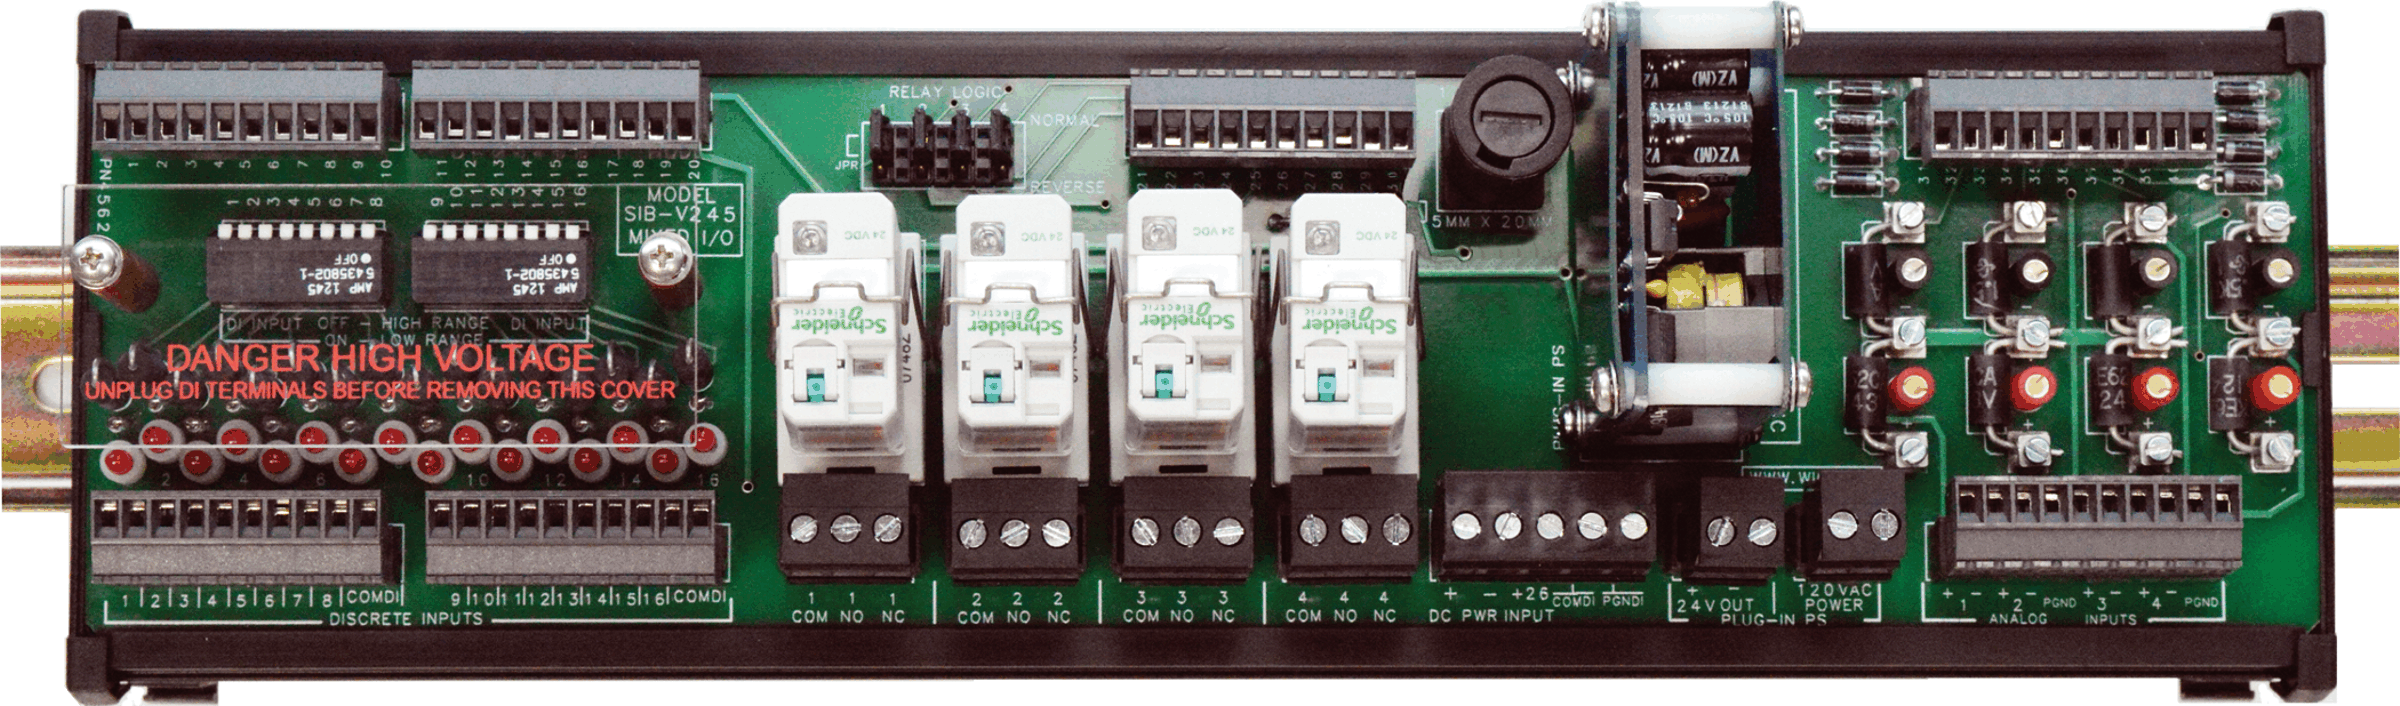 SIB-V245 / V453 Serial Interface Board Picture